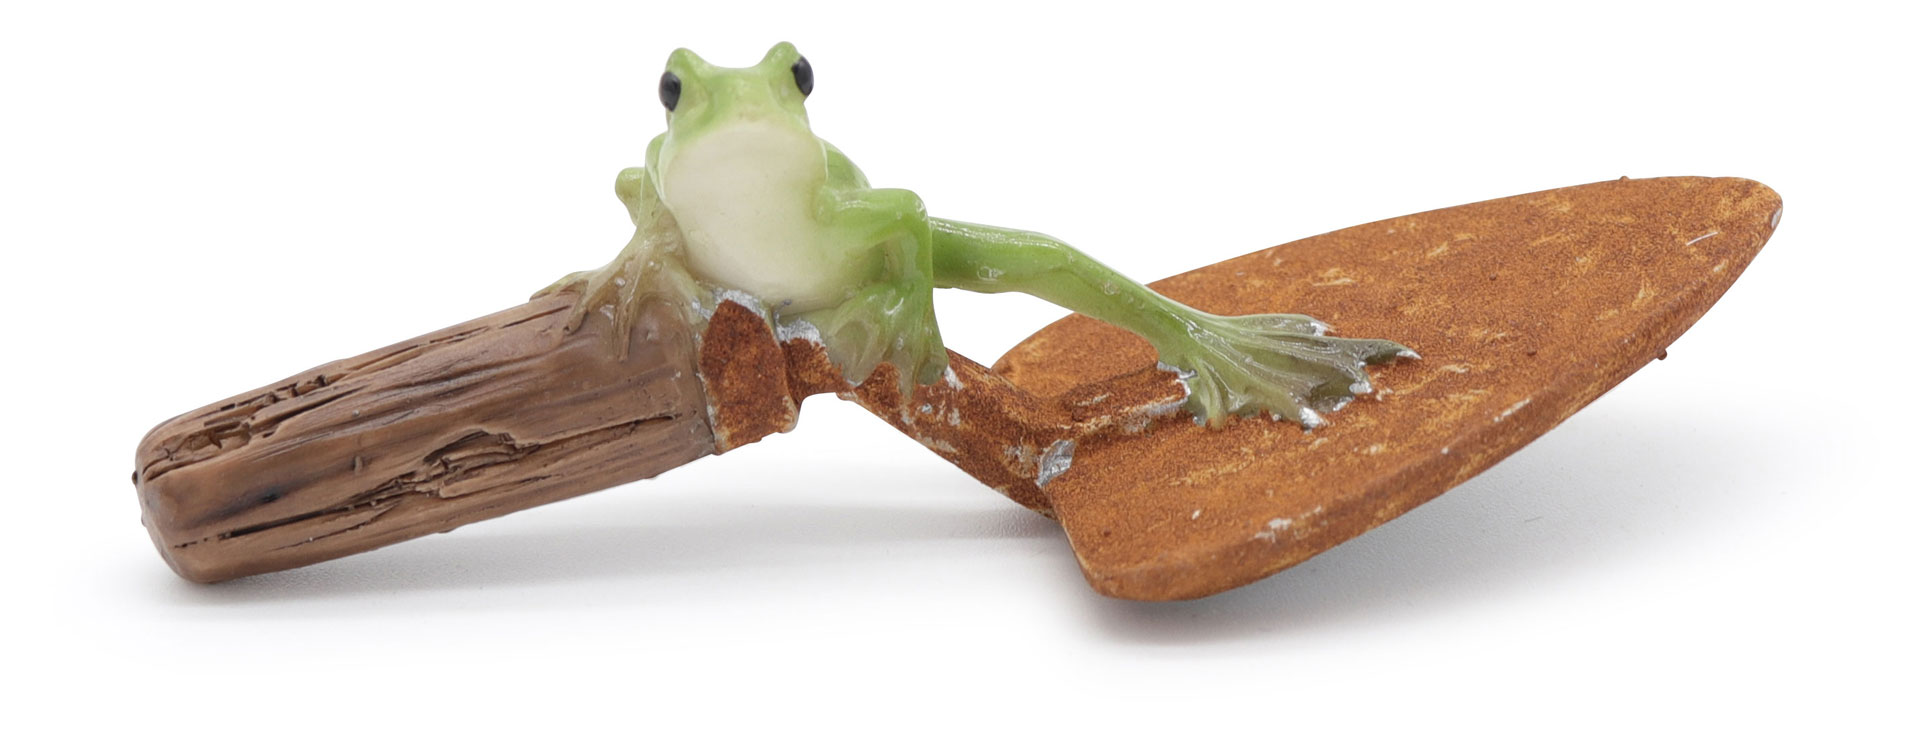 Frog Erwin on trowel, 